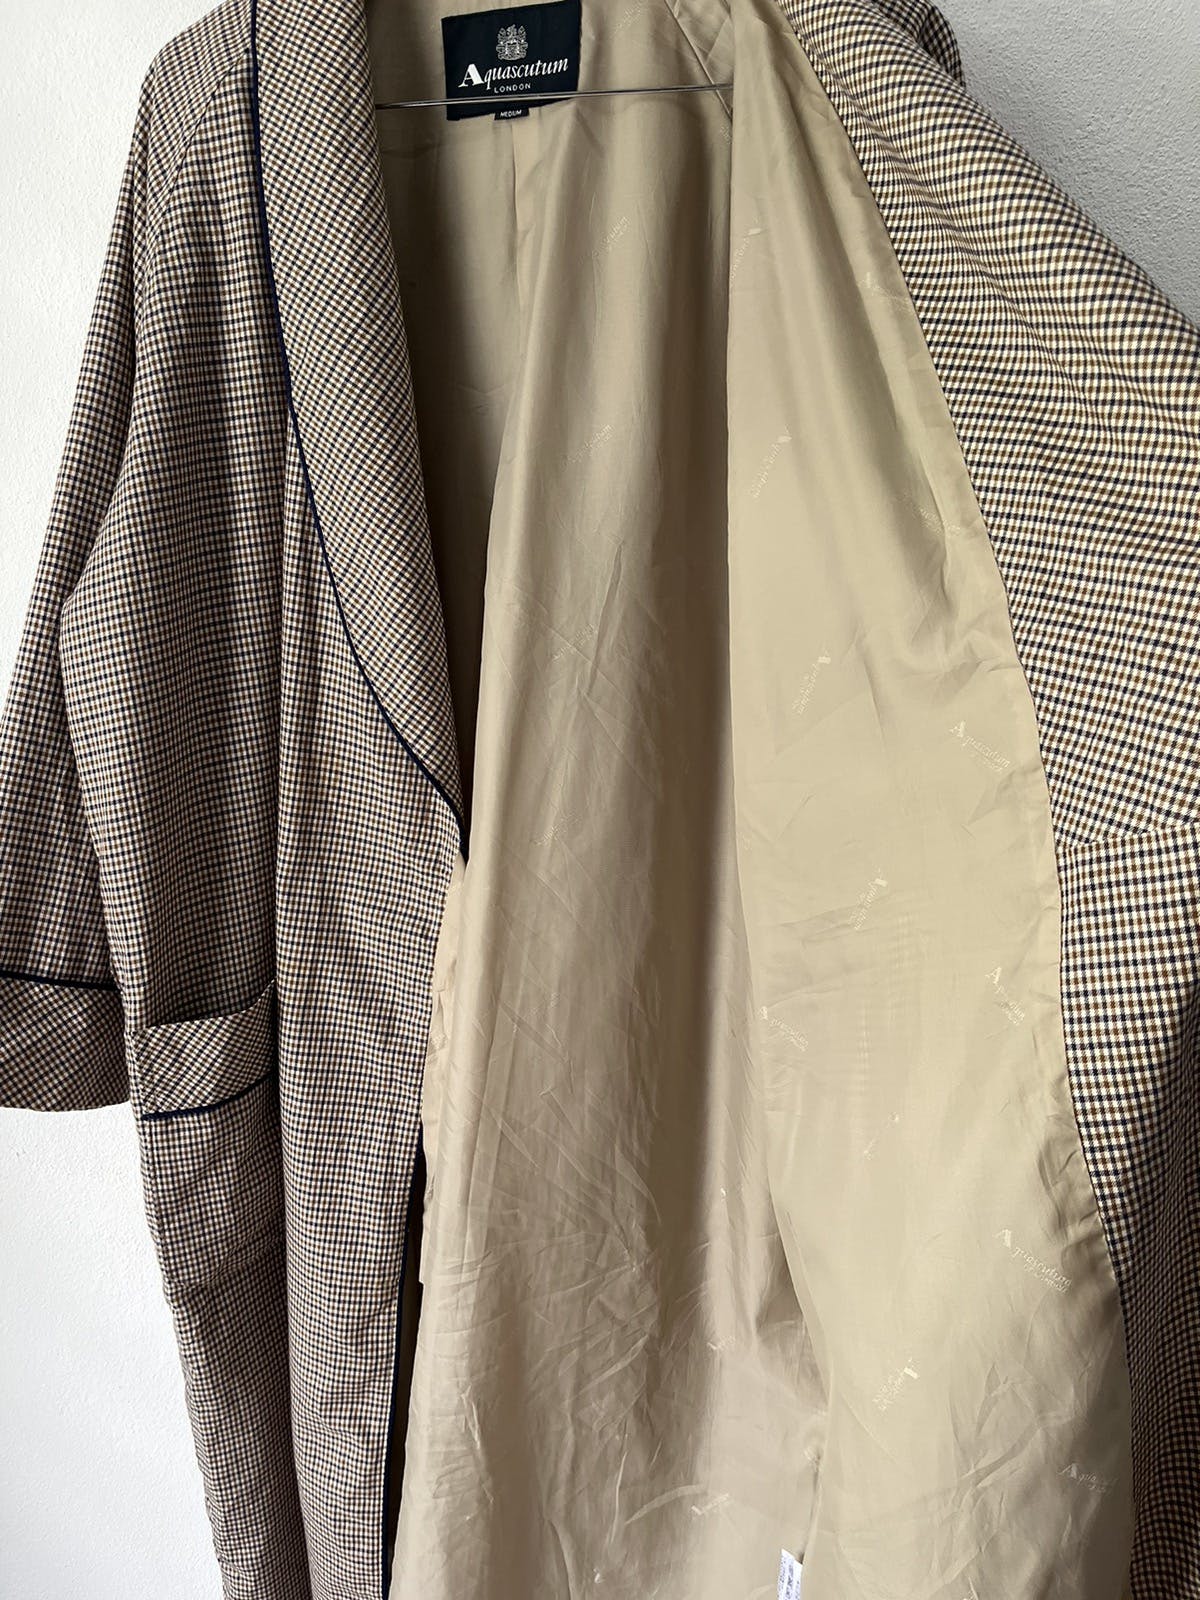 Vintage - Aquascutum Bath Robe / Nightwear Long Robe - 4